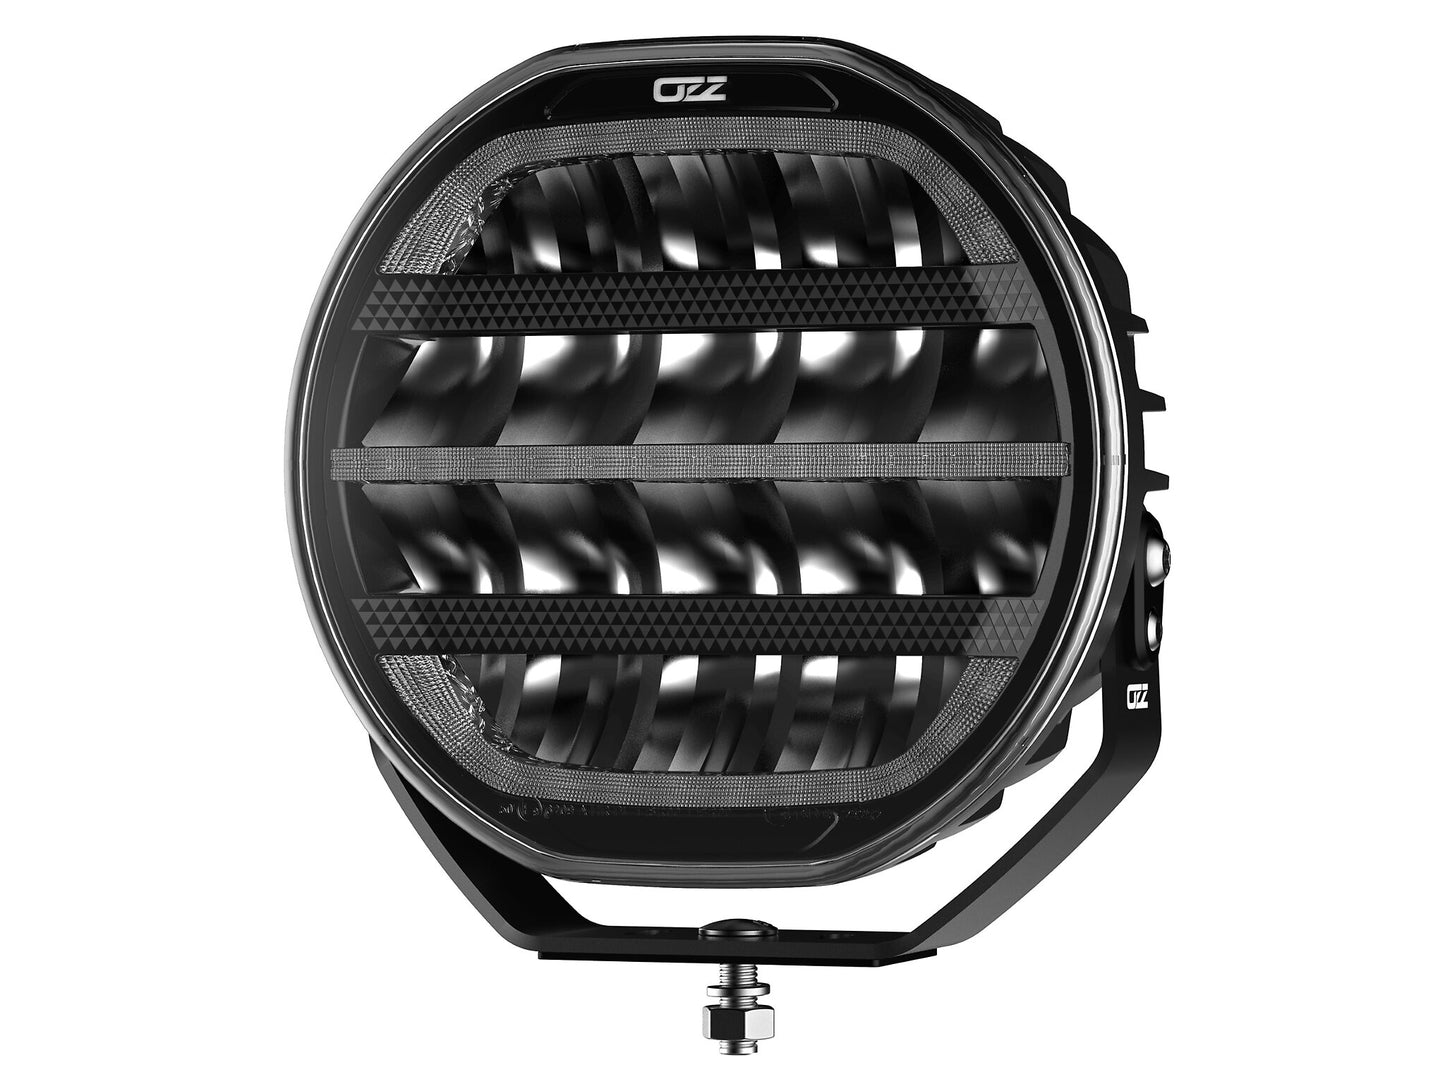 OZZ XR2 P9” LED Extraljus